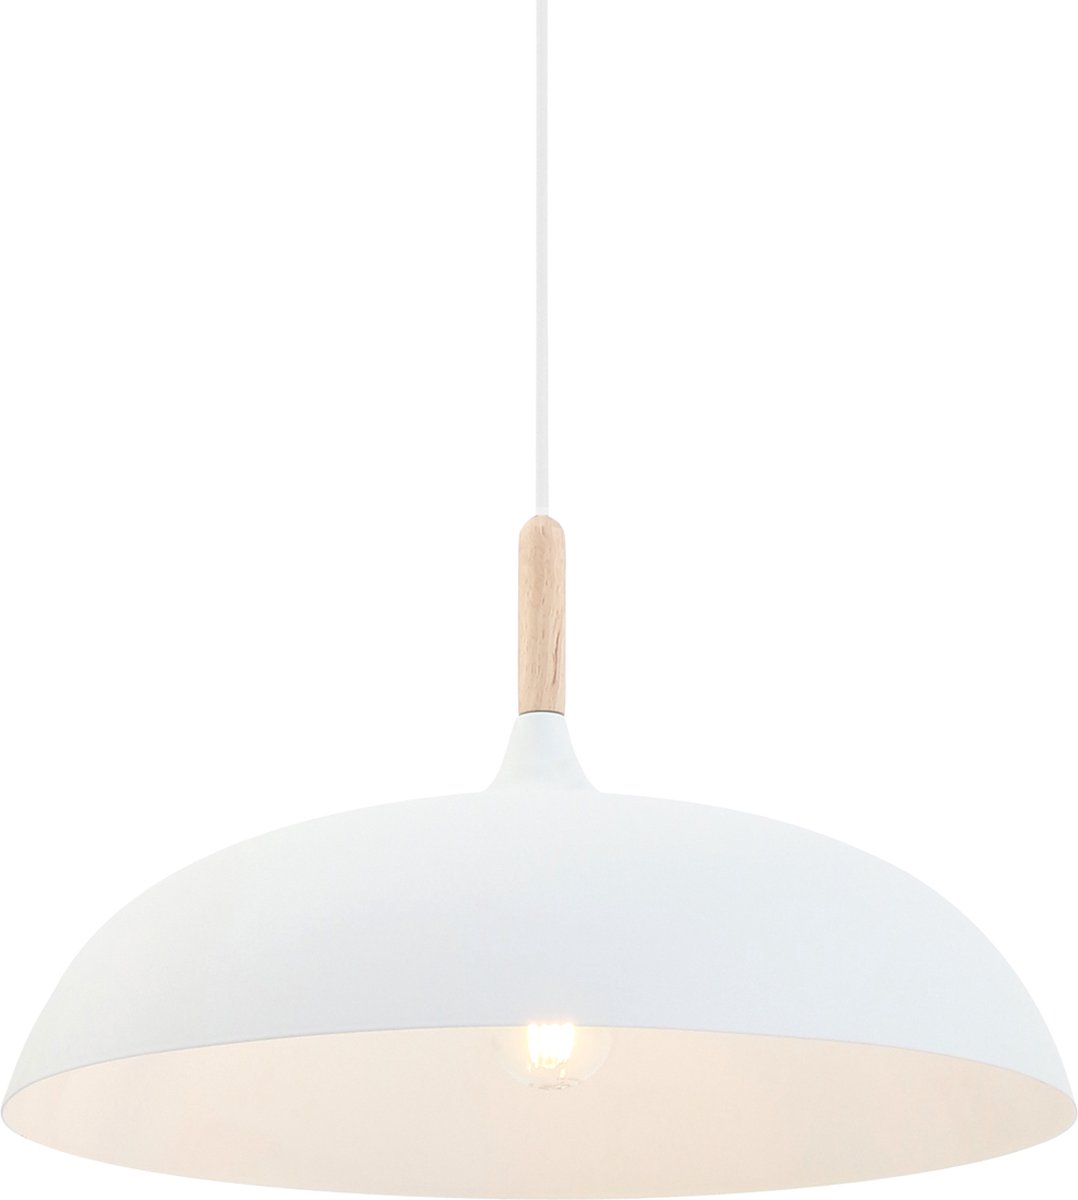 Scandinavische hanglamp Bjorr wit met hout | 1 lichts | bruin / wit | hout / metaal | Ø 45 cm | in hoogte verstelbaar tot 170 cm | eetkamer / woonkamer lamp | modern / sfeervol design